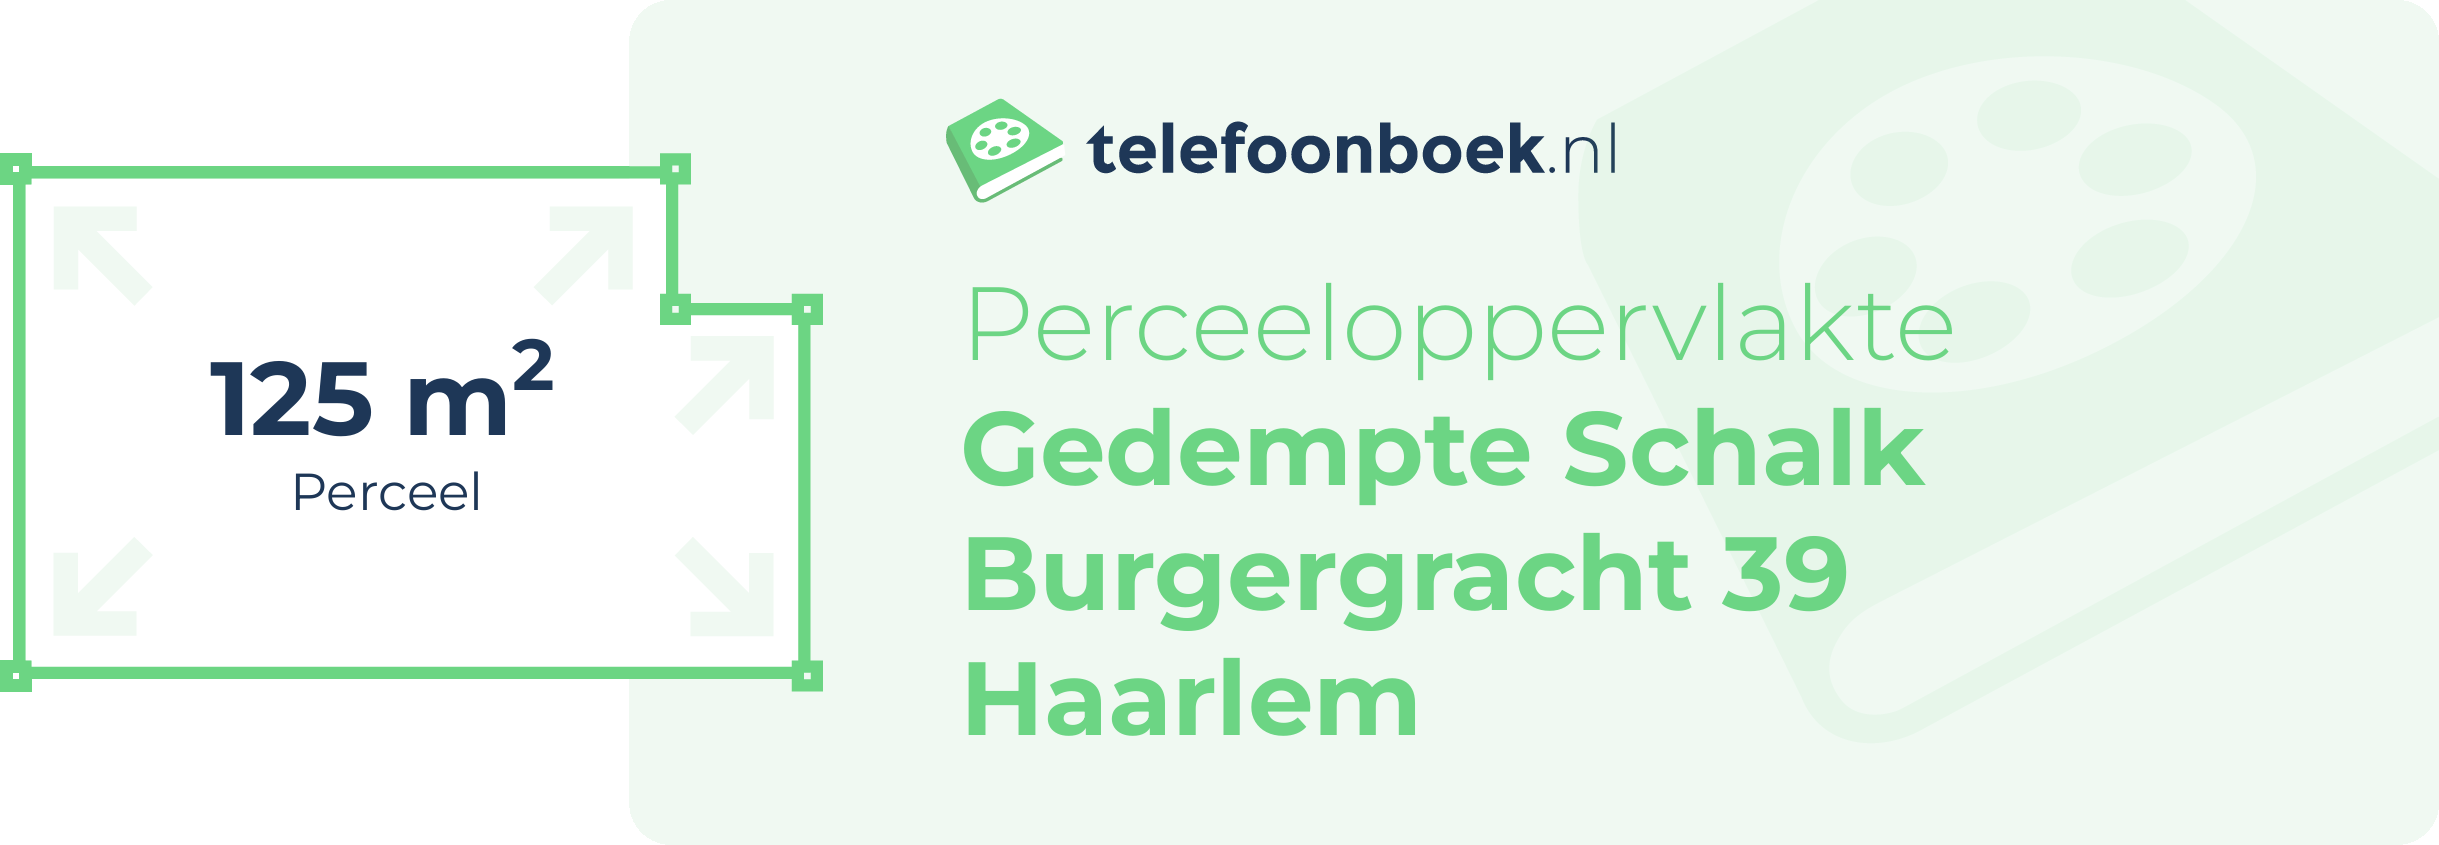 Perceeloppervlakte Gedempte Schalk Burgergracht 39 Haarlem